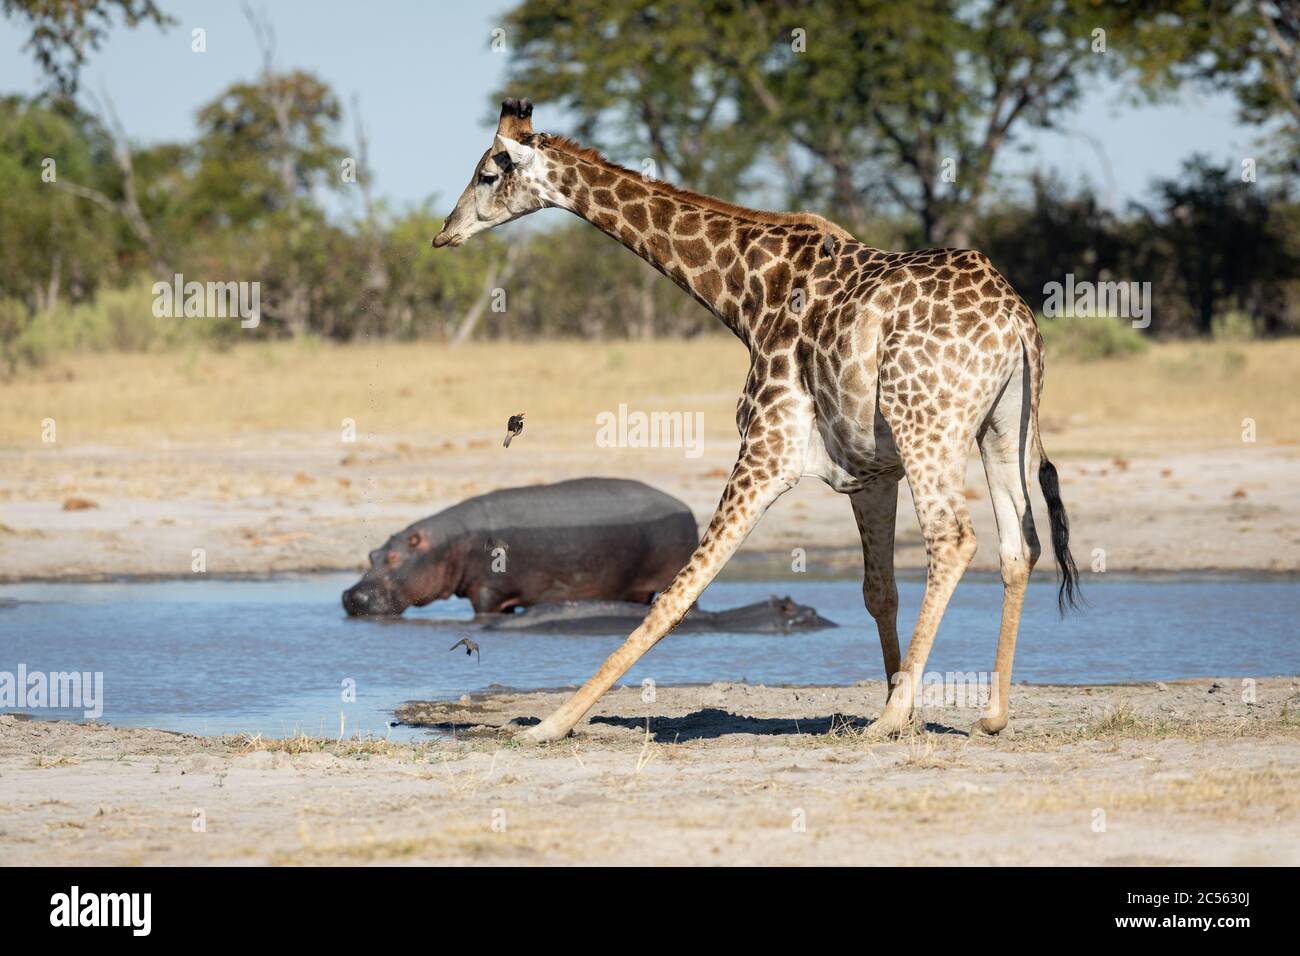 Girafe essayant de boire de l'eau au bord d'un barrage avec deux hippopotames en arrière-plan dans le delta de Moremi Okavango Botswana Banque D'Images